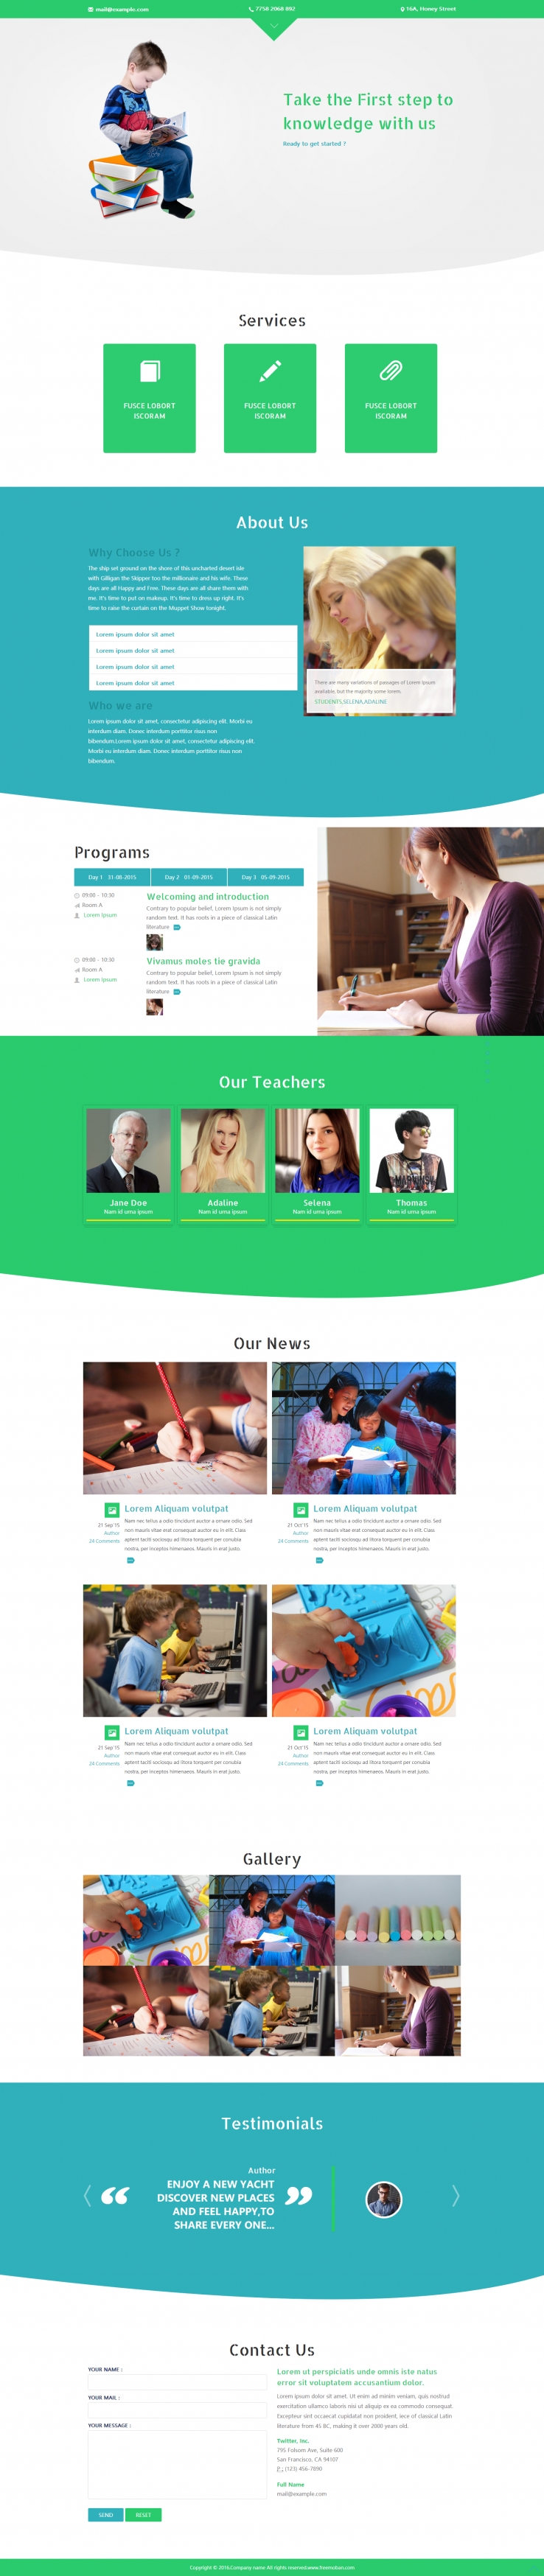 绿色简洁风格的儿童教育培训网站模板下载